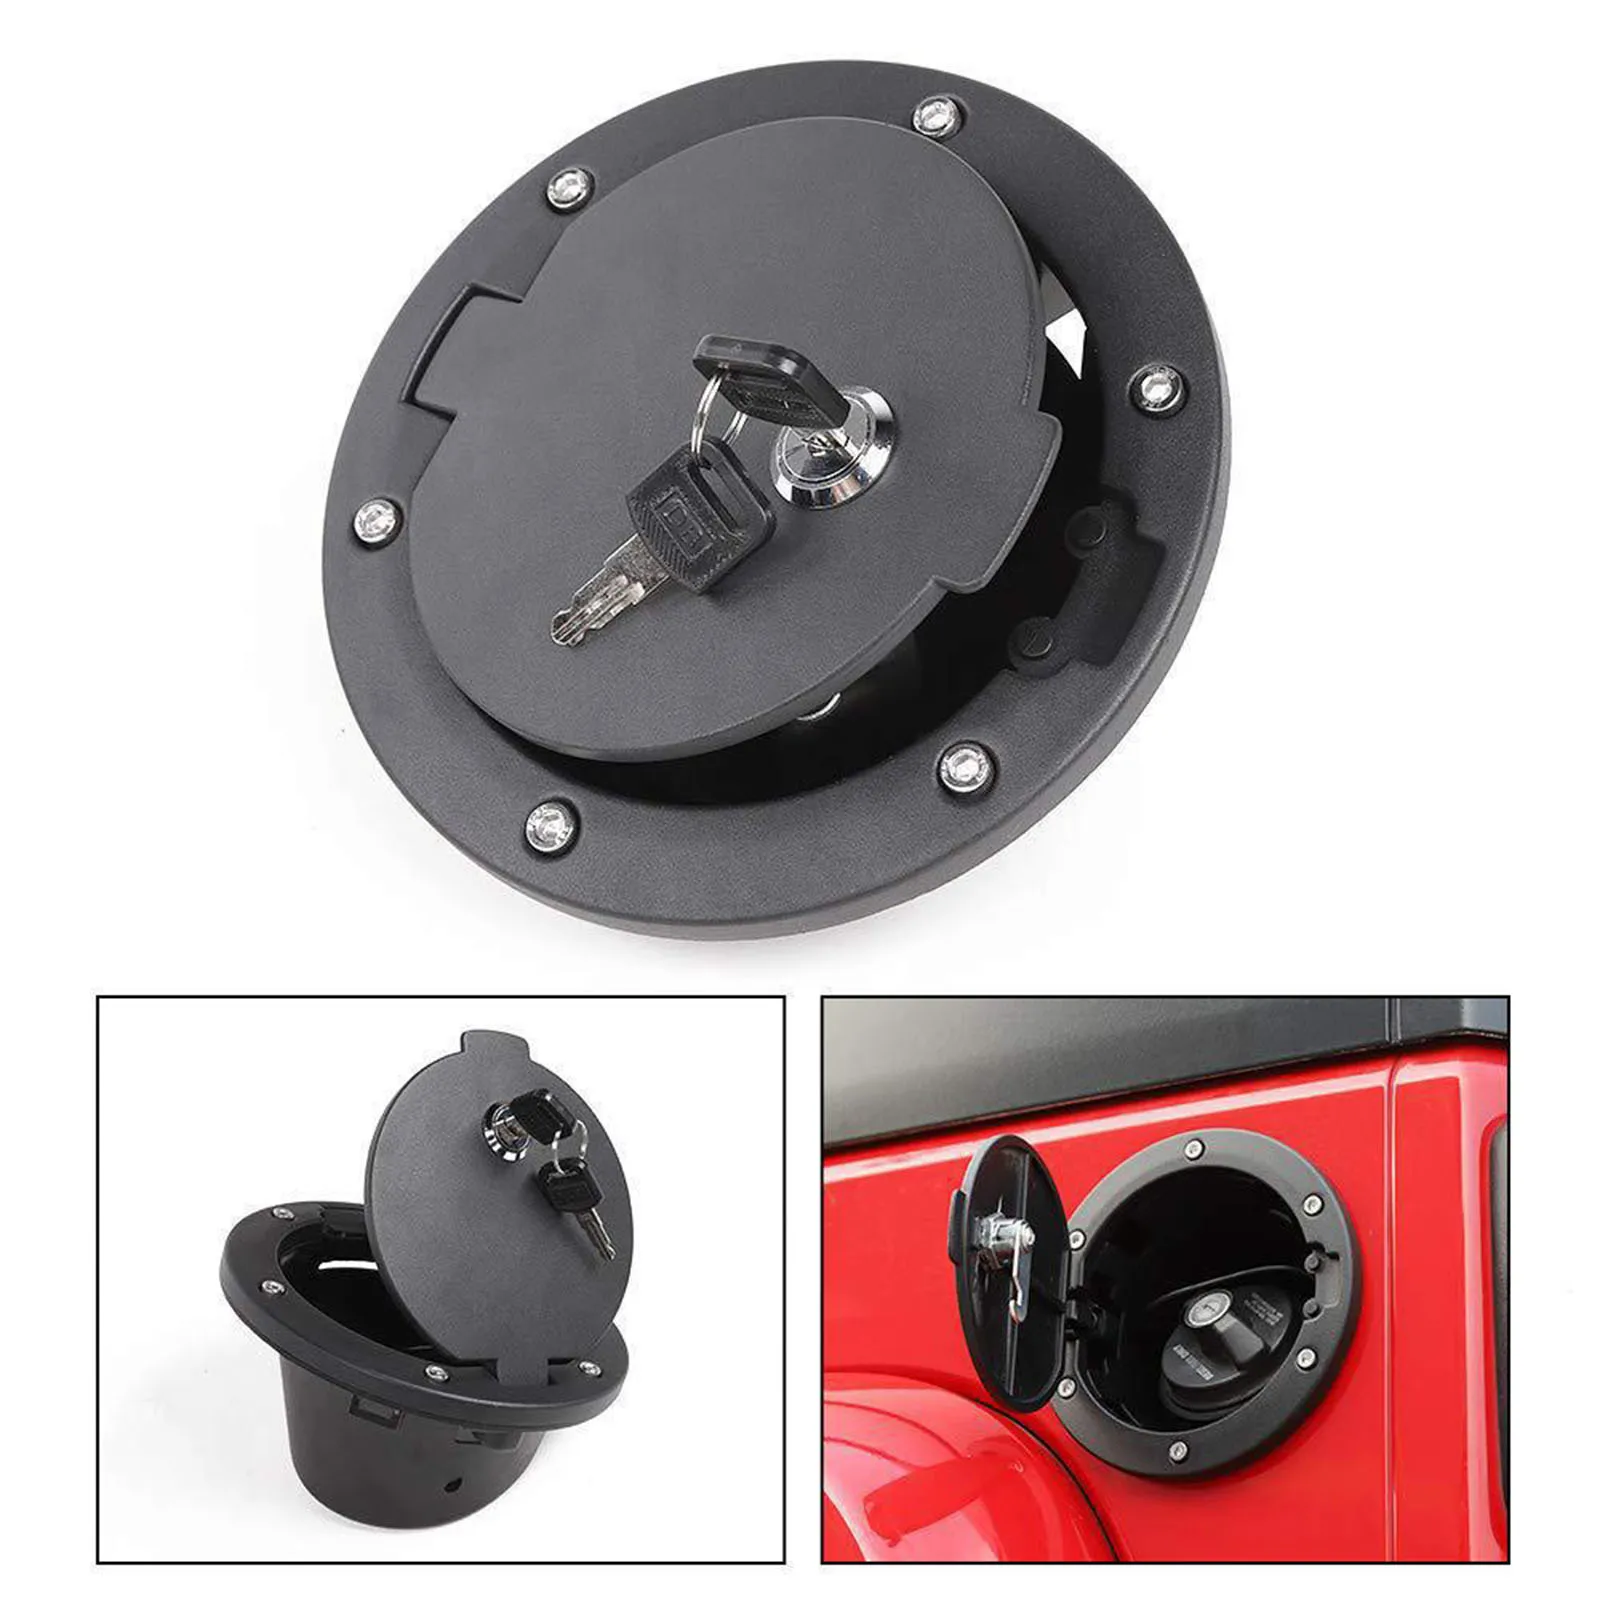 Locking Gas Fuel Filler Door Cover for Wrangler JK Door,Gas Tank Door Cover Auto Accessories Black